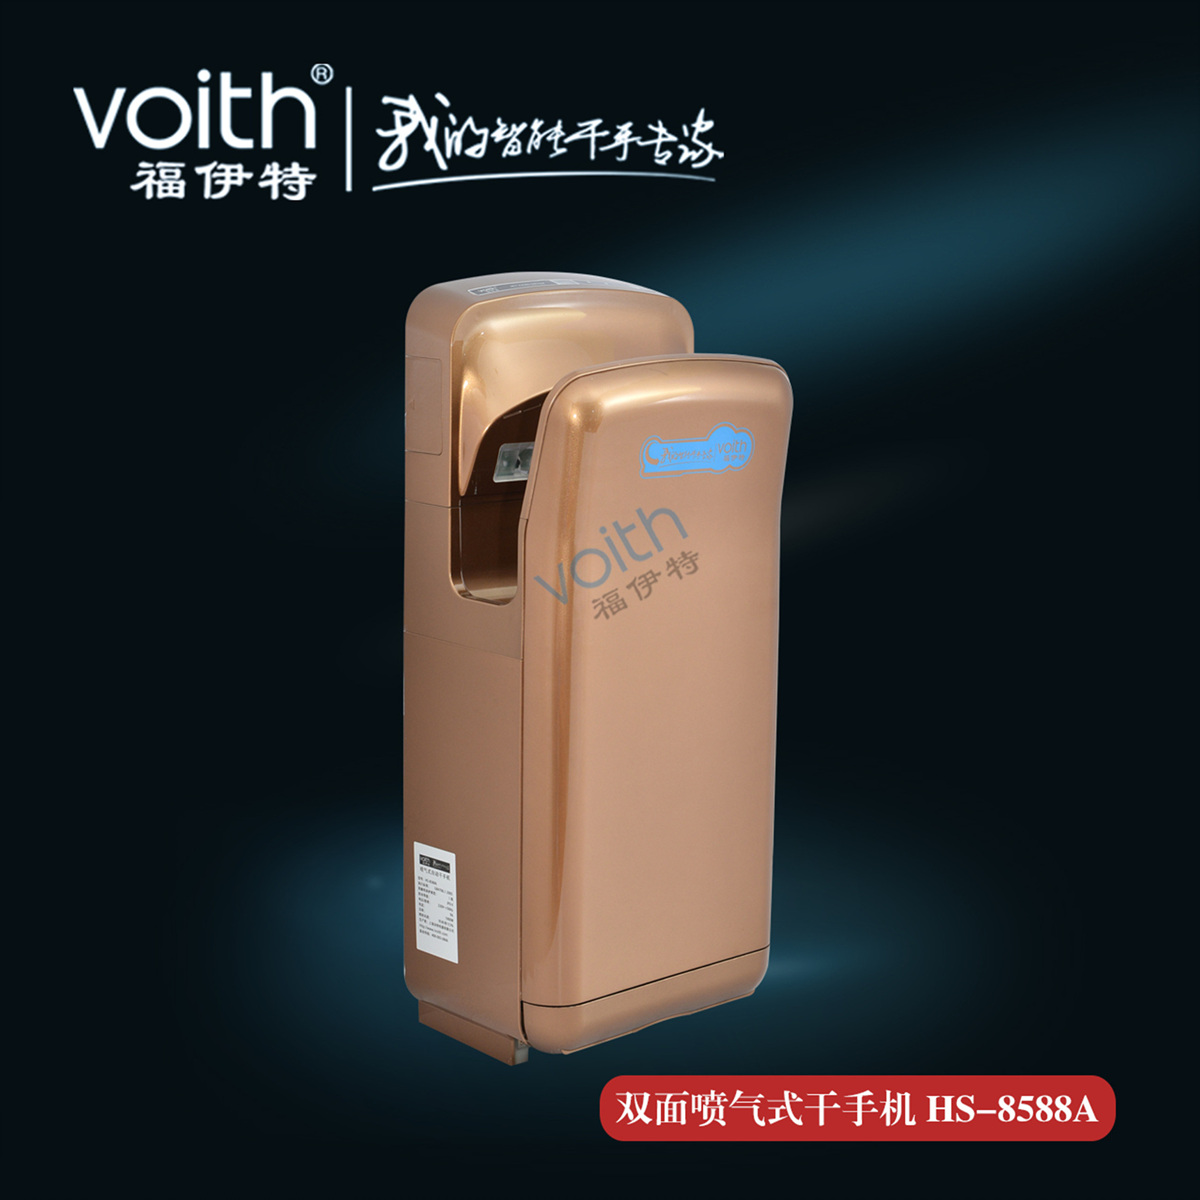 上海市品牌VOITH福伊特速干烘手机厂家干手系统品牌VOITH福伊特速干烘手机干手器批发